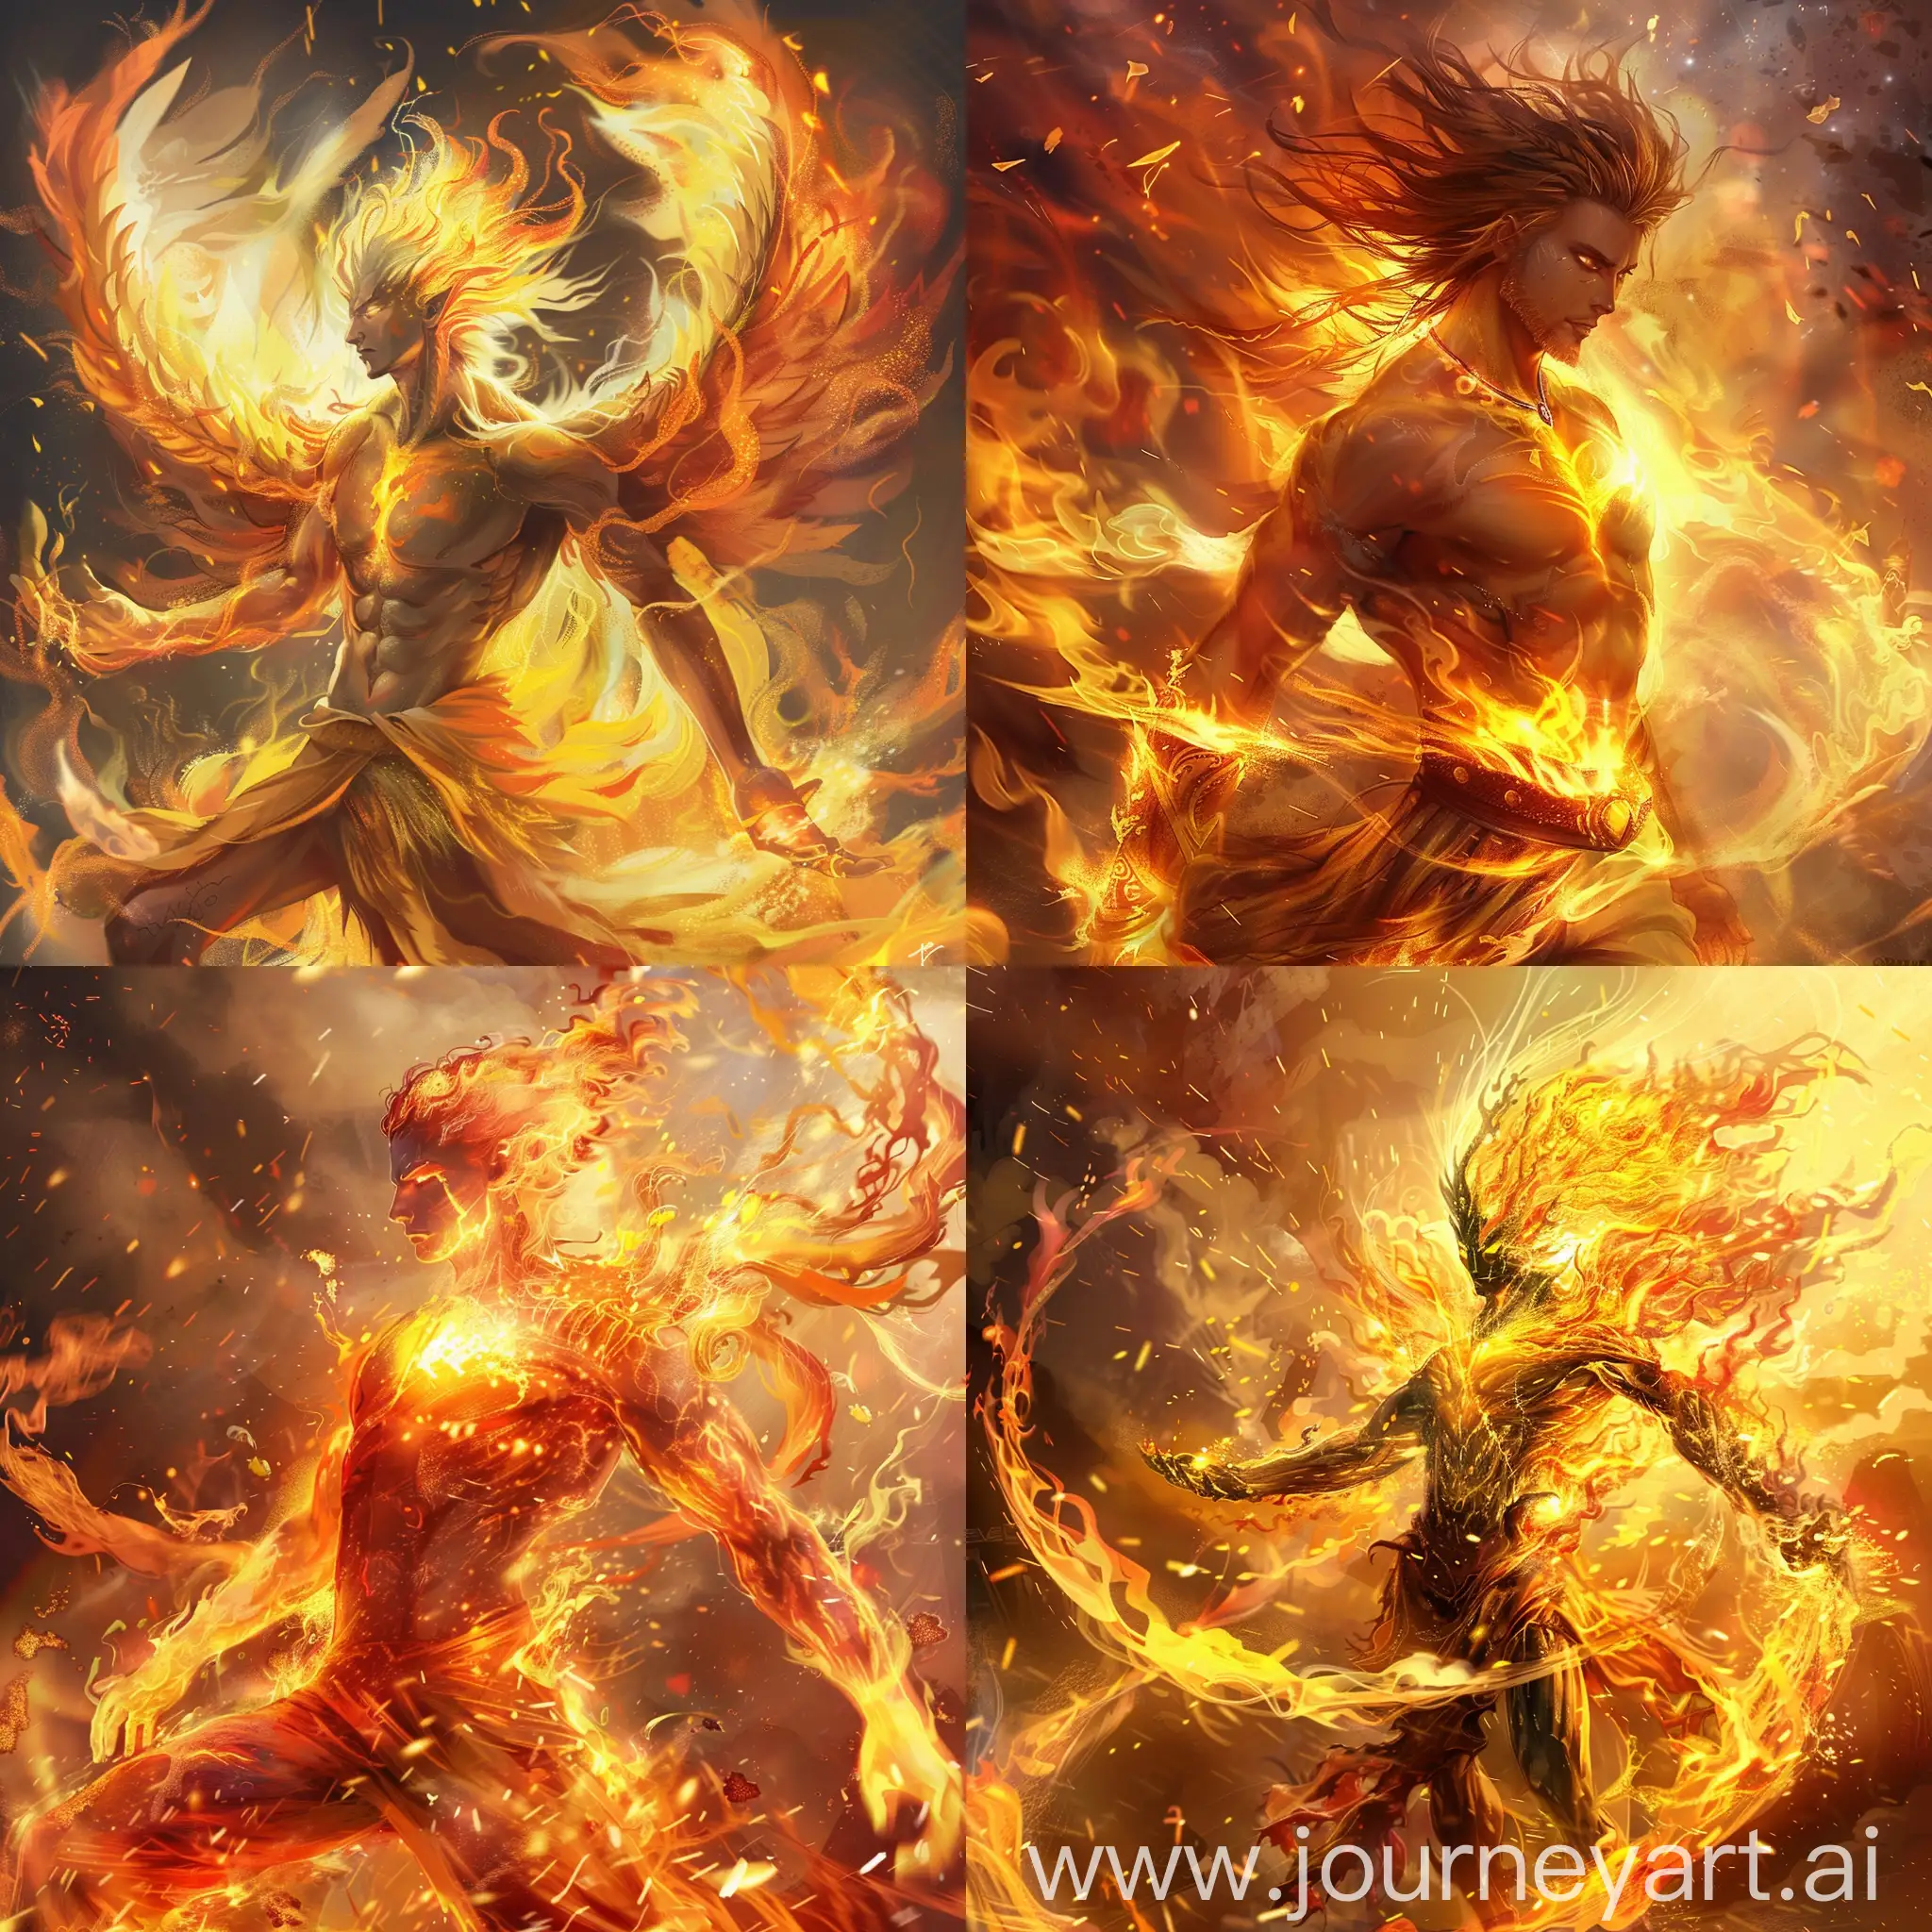 Игнис - изначальный бог огня, мужского пола повелитель всего пламени, невероятно красивый